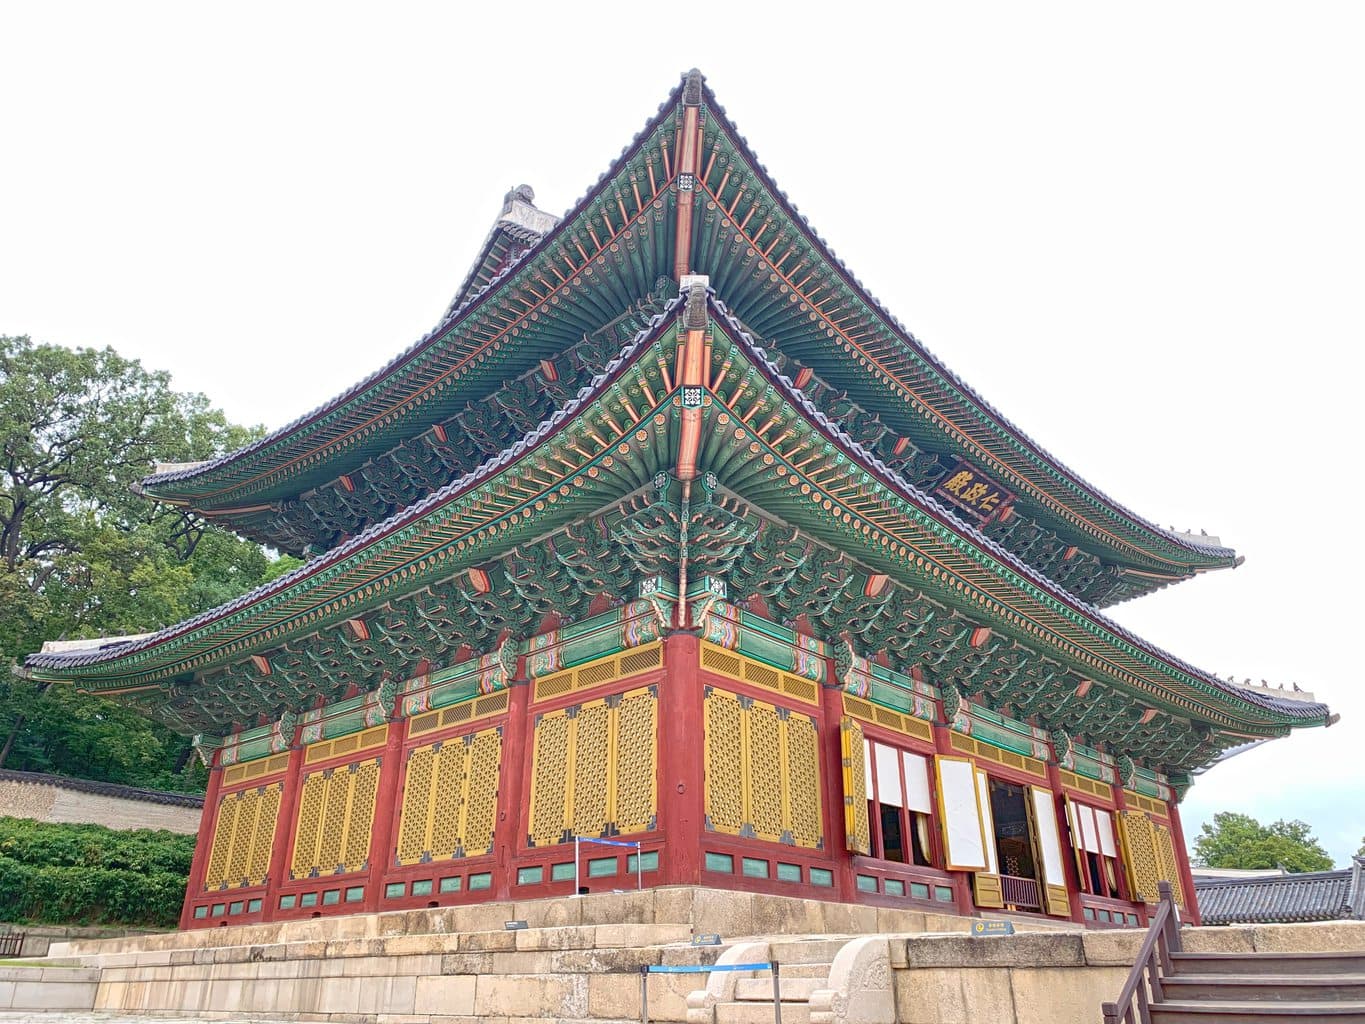 Injeongjeon at Changdeokgung Palace